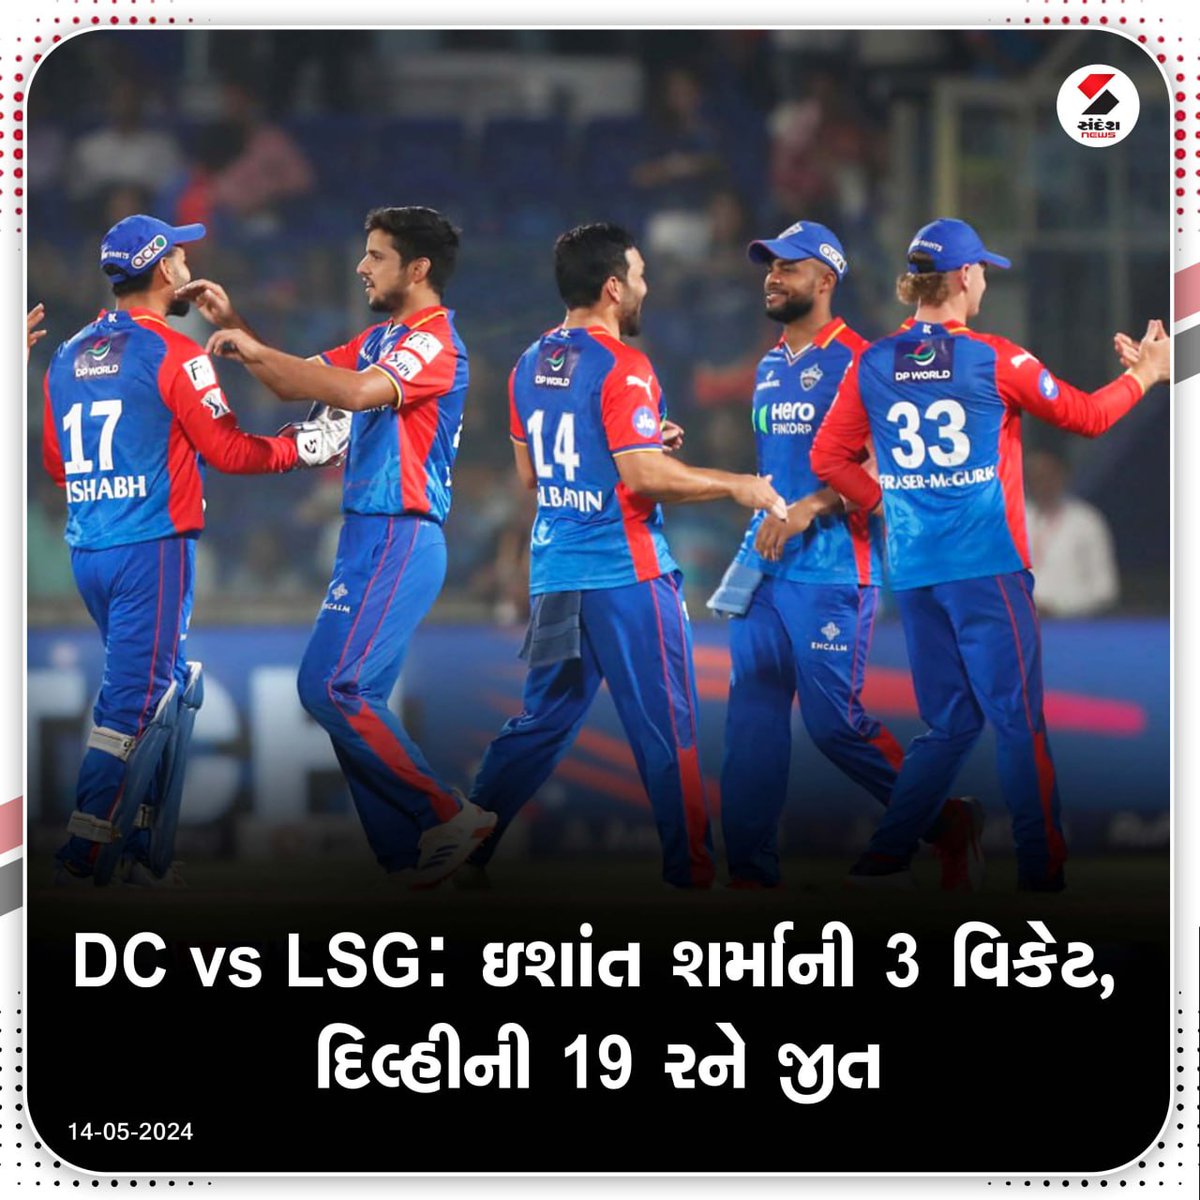 DC vs LSG: ઇશાંત શર્માની 3 વિકેટ, દિલ્હીની 19 રને જીત..... #IPL2024 #DCvsLSG #IPL #Cricket #Sports #SandeshNews